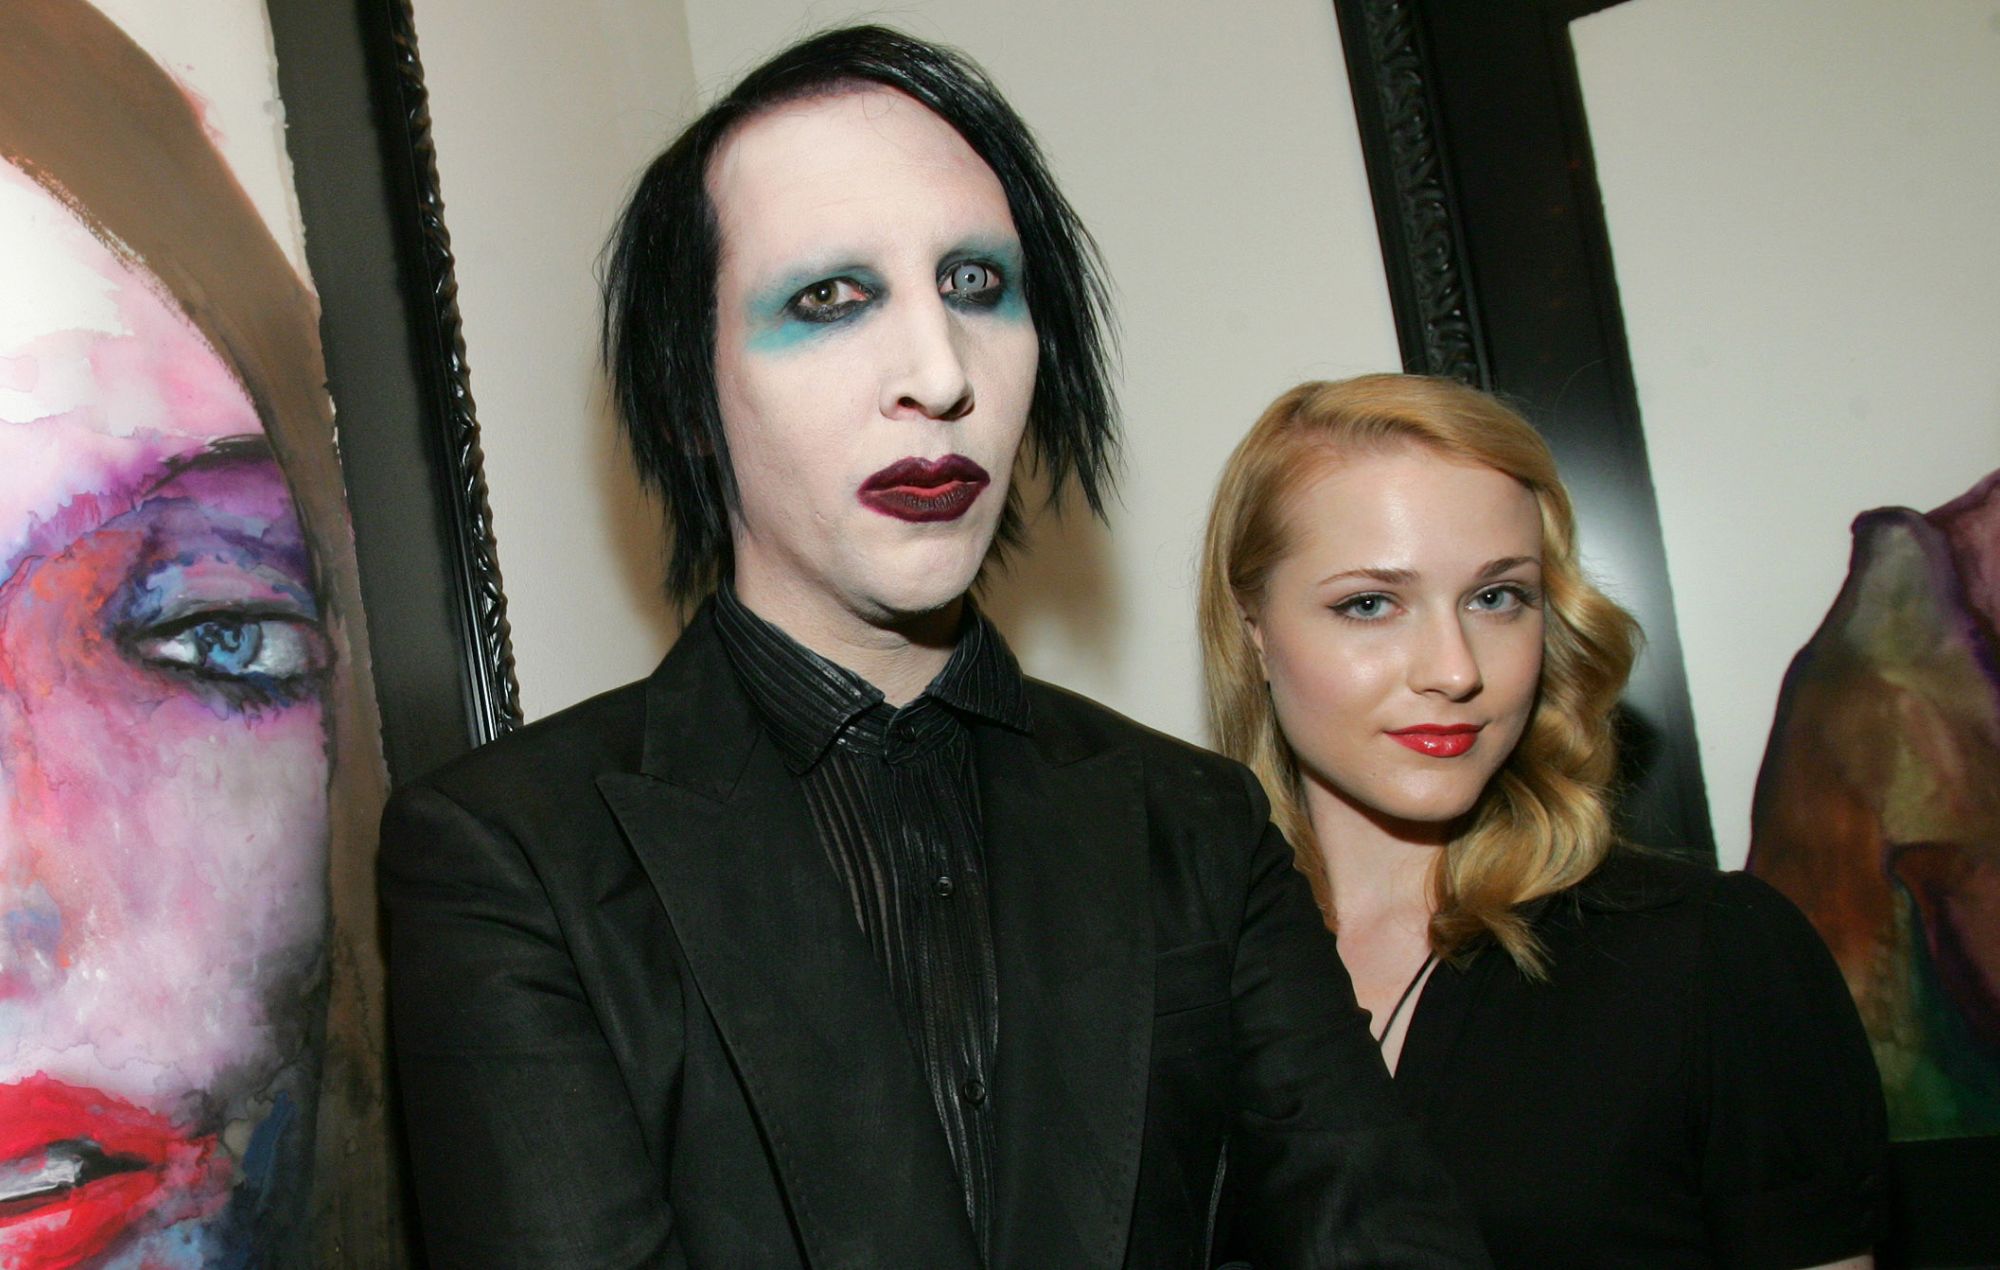 Marilyn Manson condenado a pagar los gastos legales de Evan Rachel Wood tras desestimarse su demanda por difamación